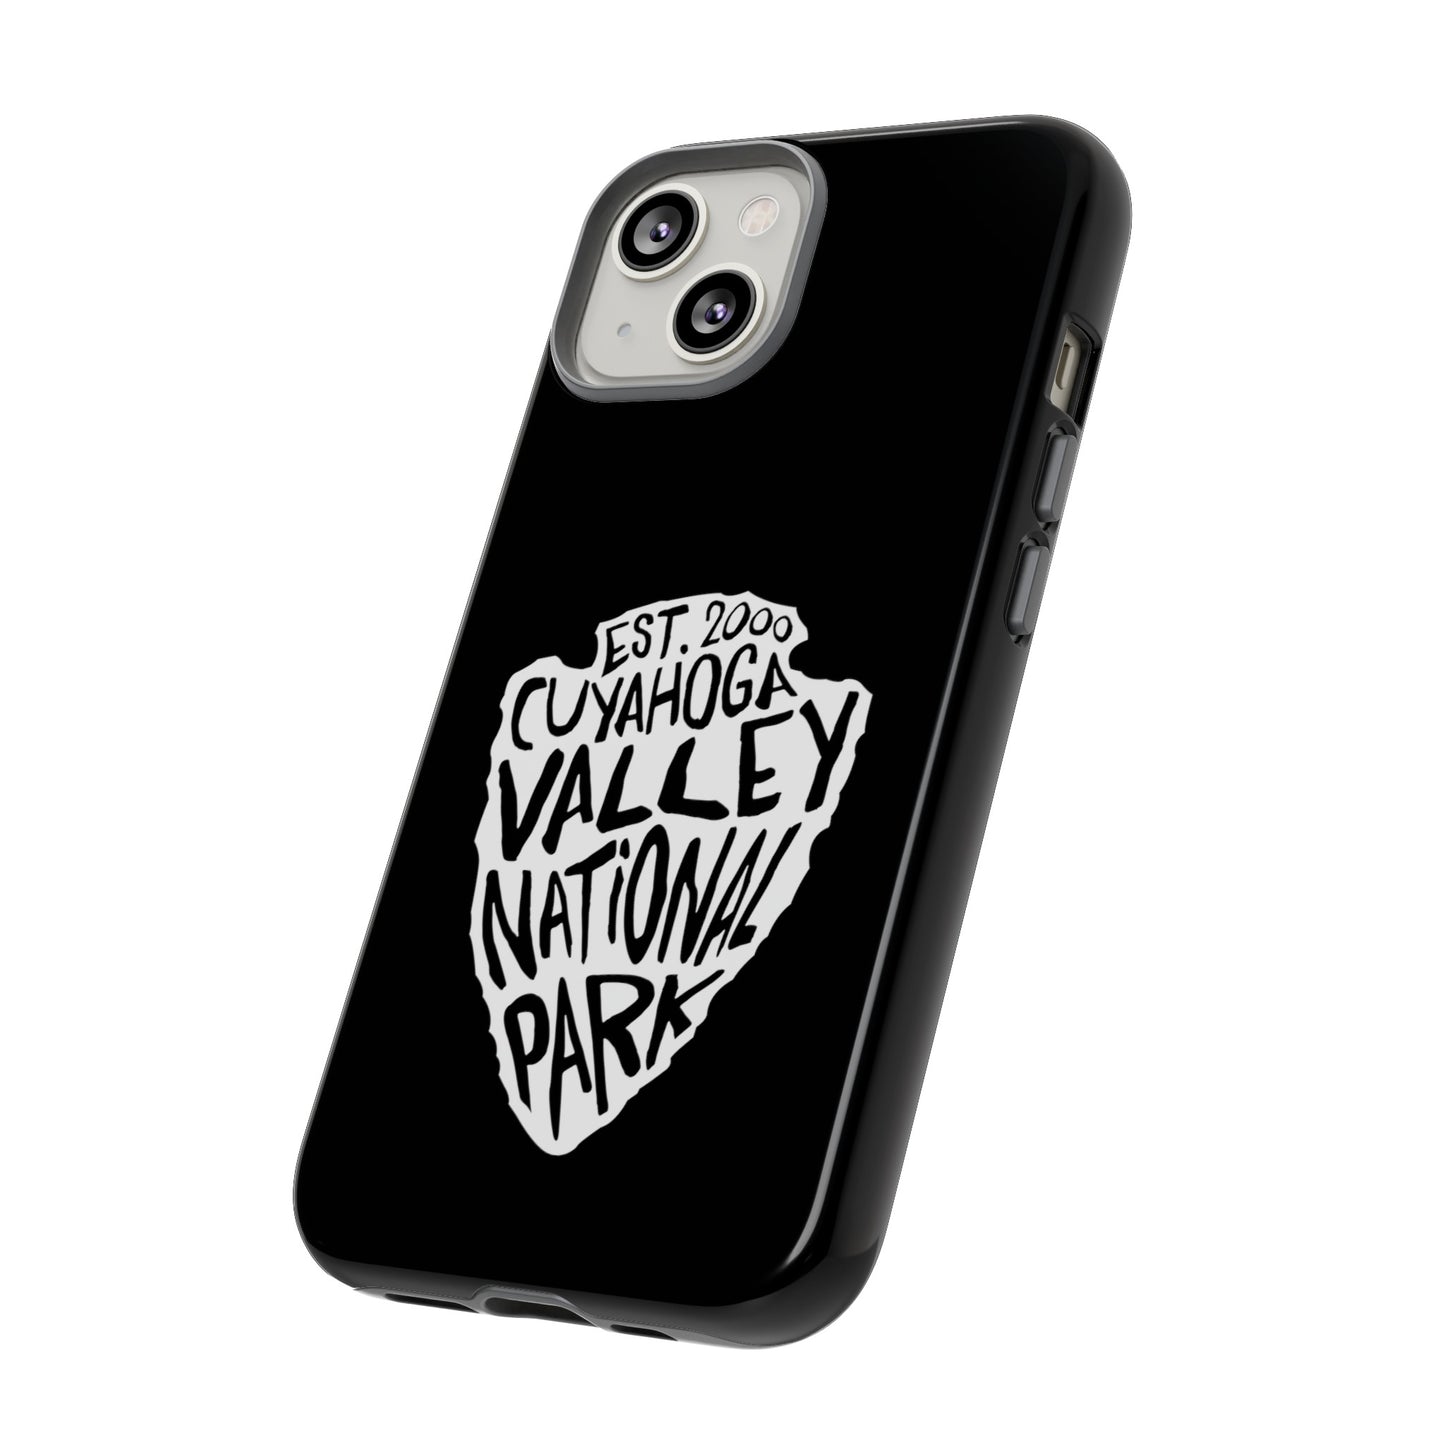 Cuyahoga Valley National Park Phone Case - Arrowhead Design